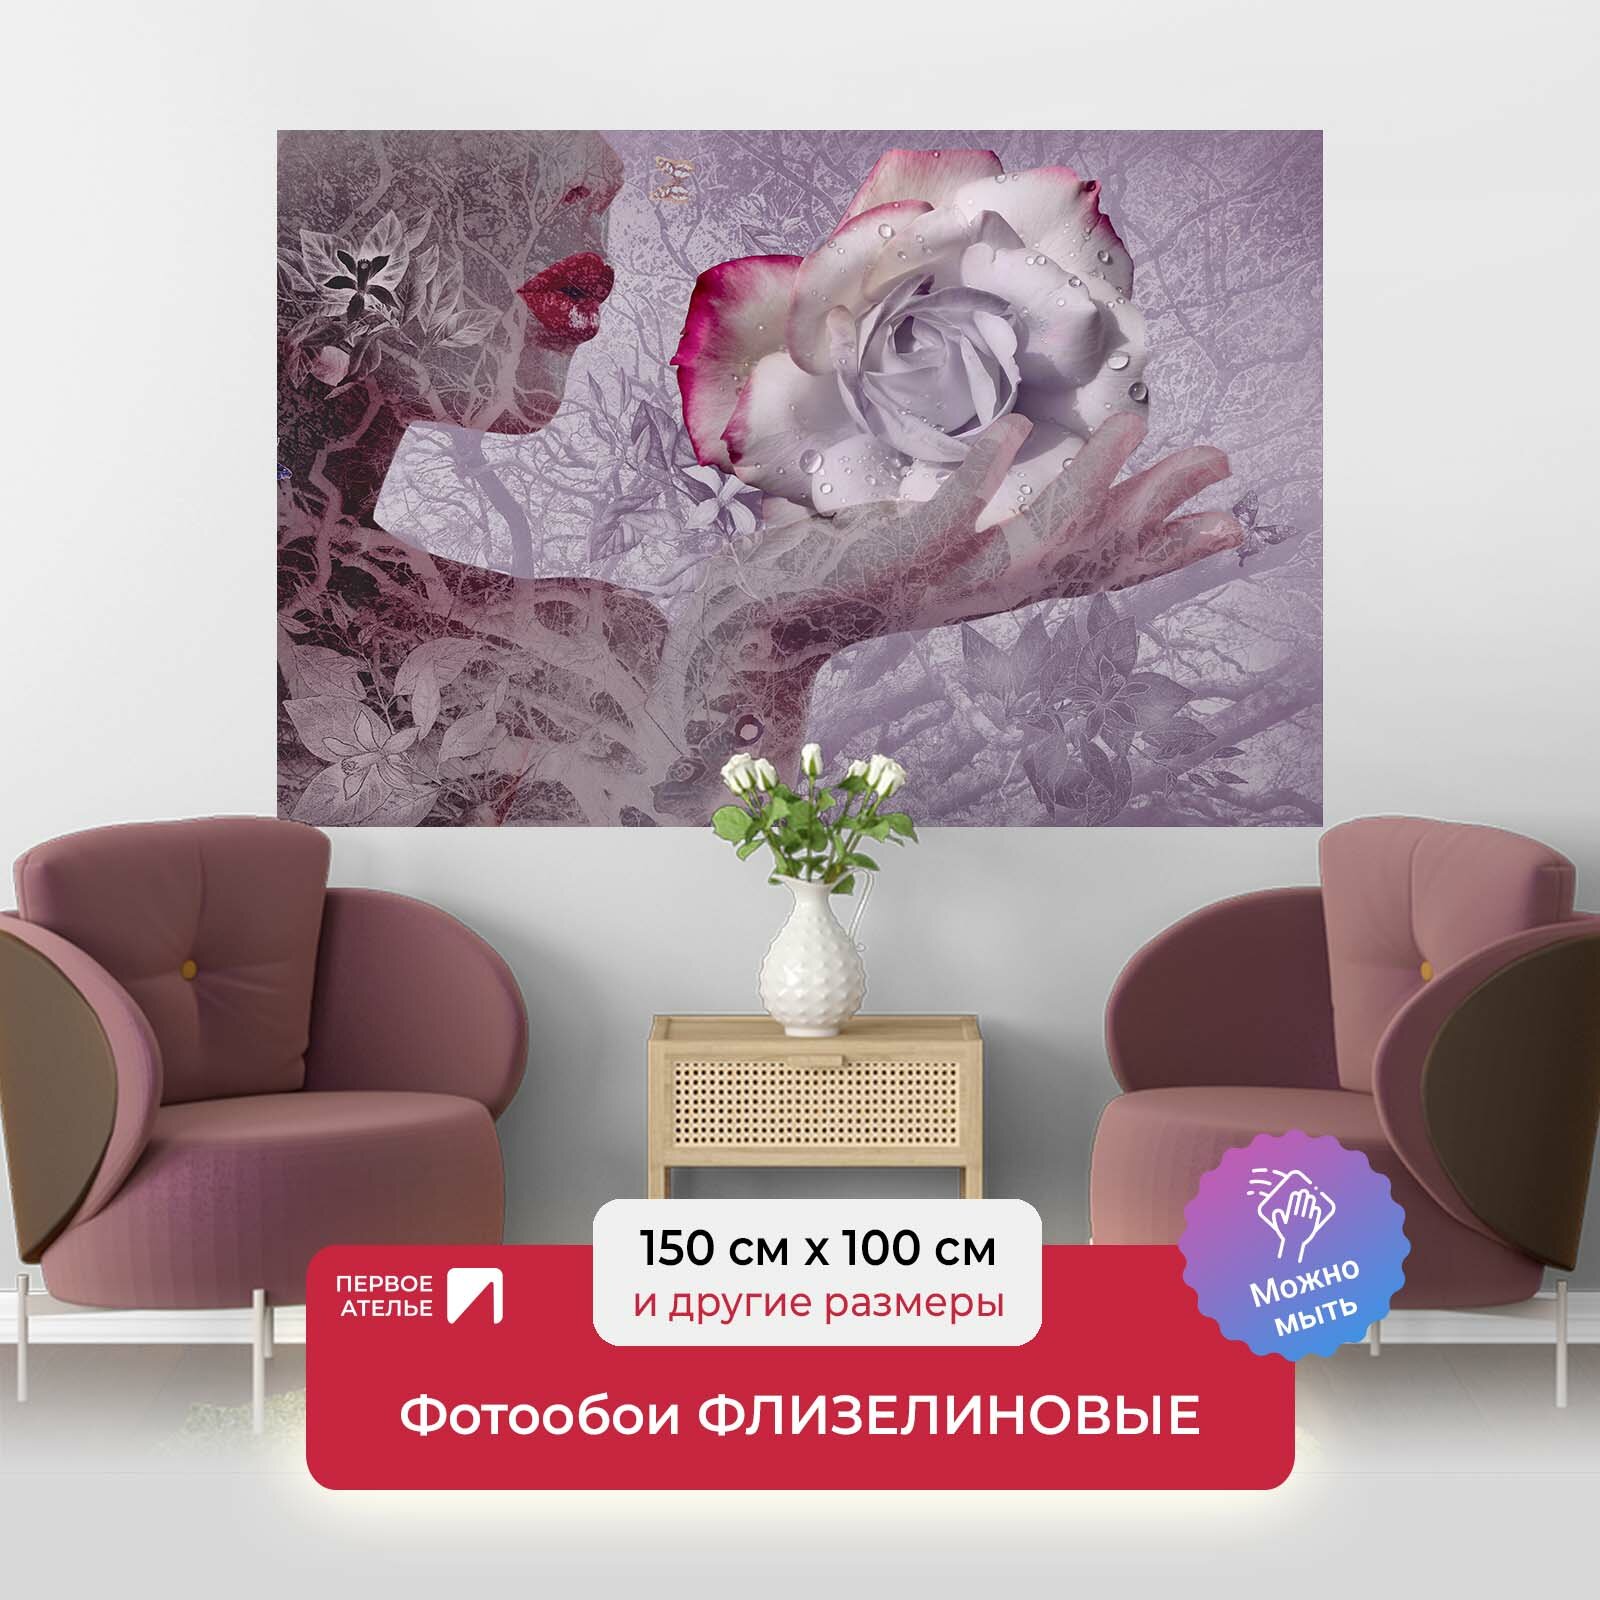 Фотообои на стену первое ателье "Абстракция девушка с розой в каплях воды на ладони" 150х100 см (ШхВ), флизелиновые Premium